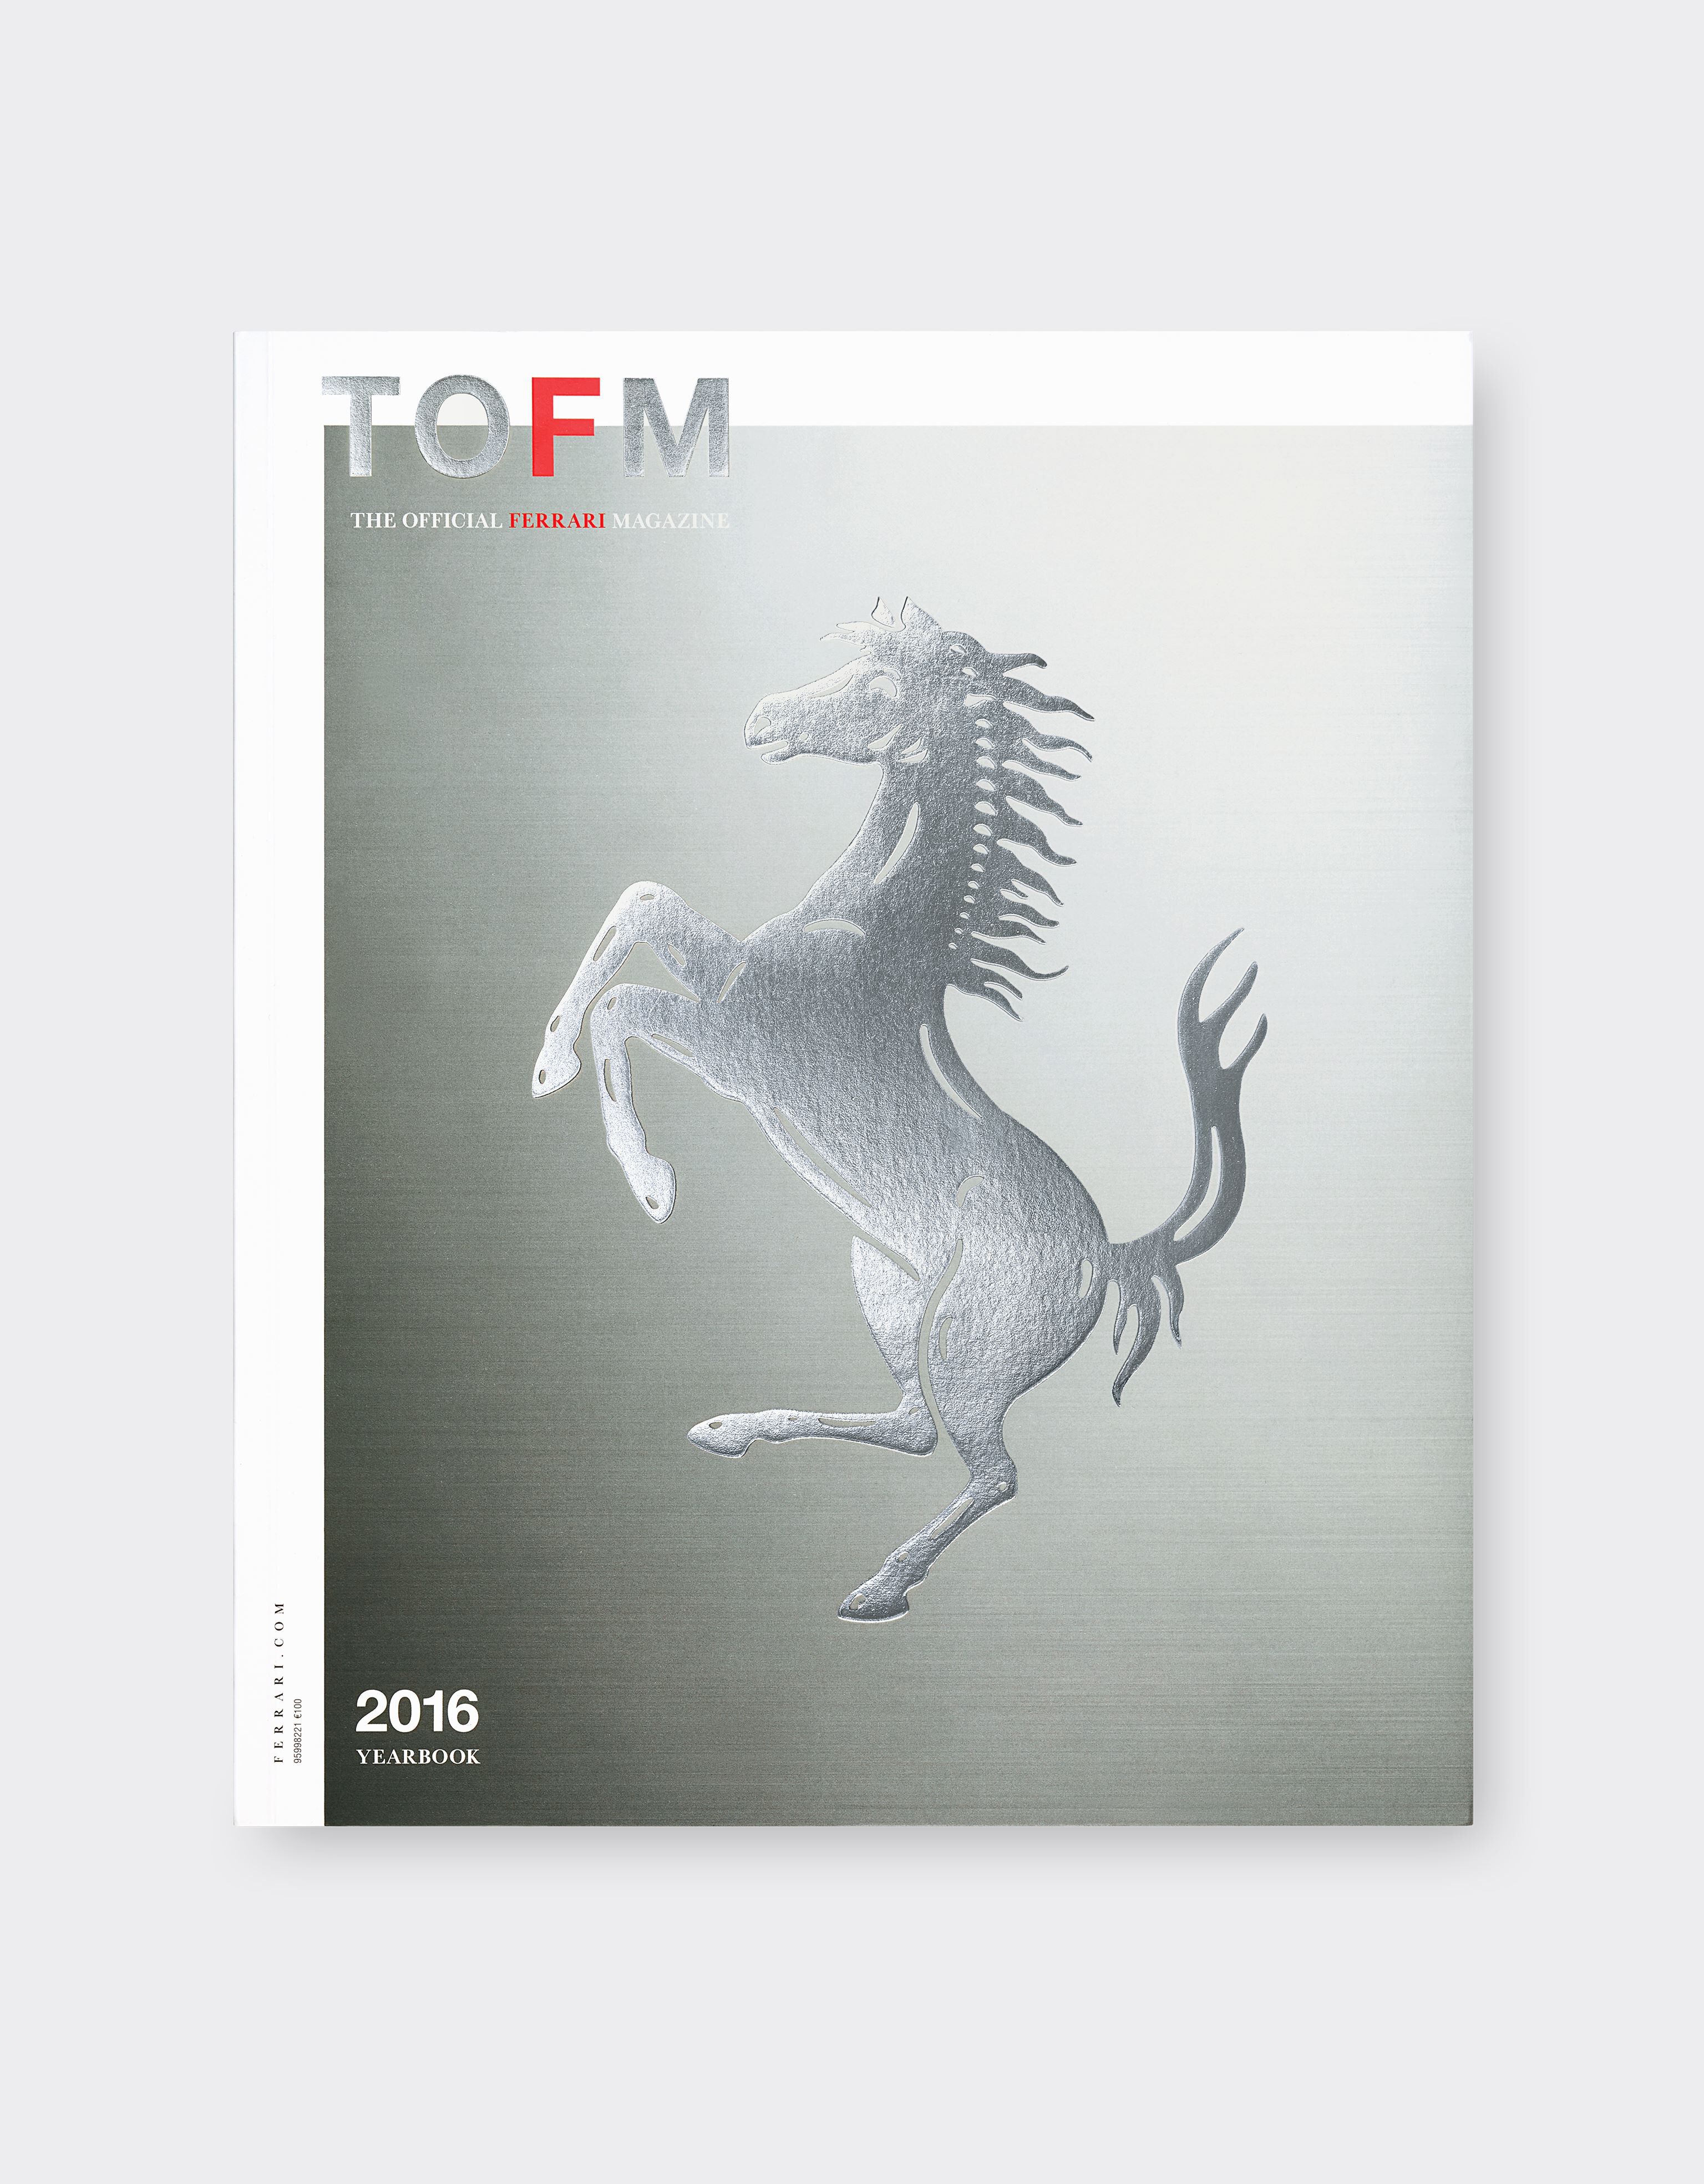 Ferrari The Official Ferrari Magazine issue 34 - 2016 Yearbook MULTICOLOUR 15389f